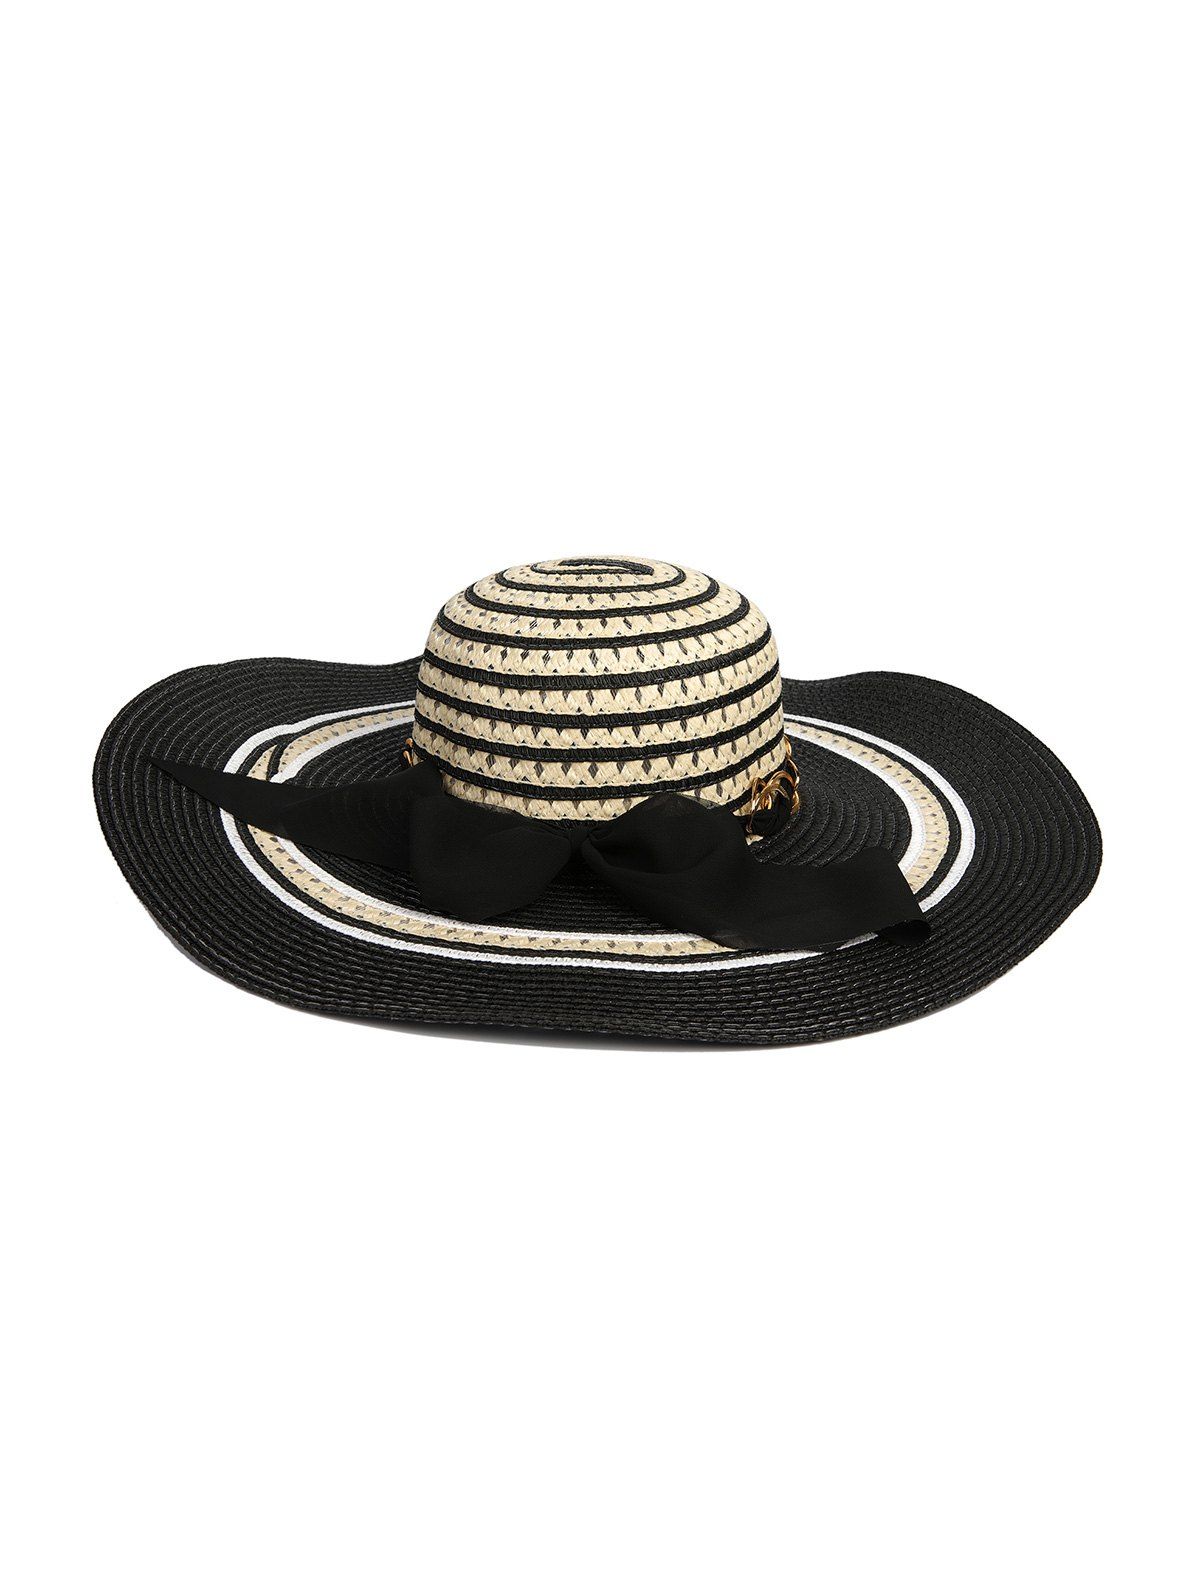 Striped Chain Ribbon Bowknot Straw Hat - BLACK 